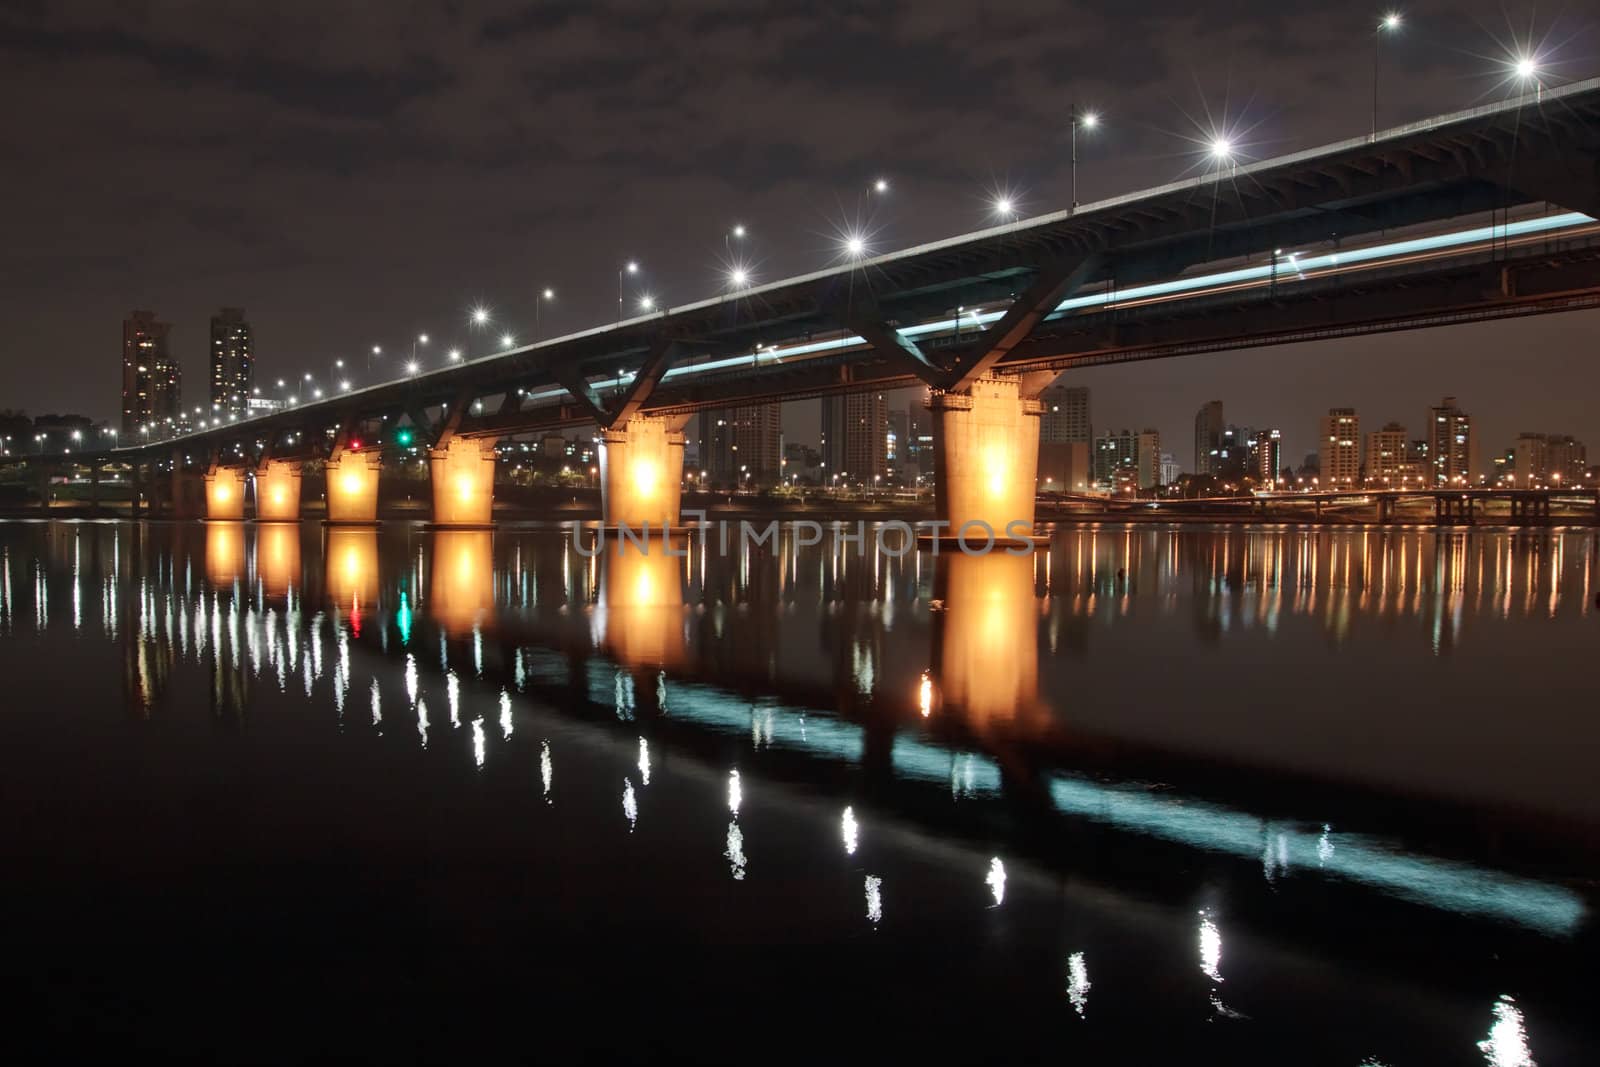 Cheongdam bridge over Han river in Seoul at night